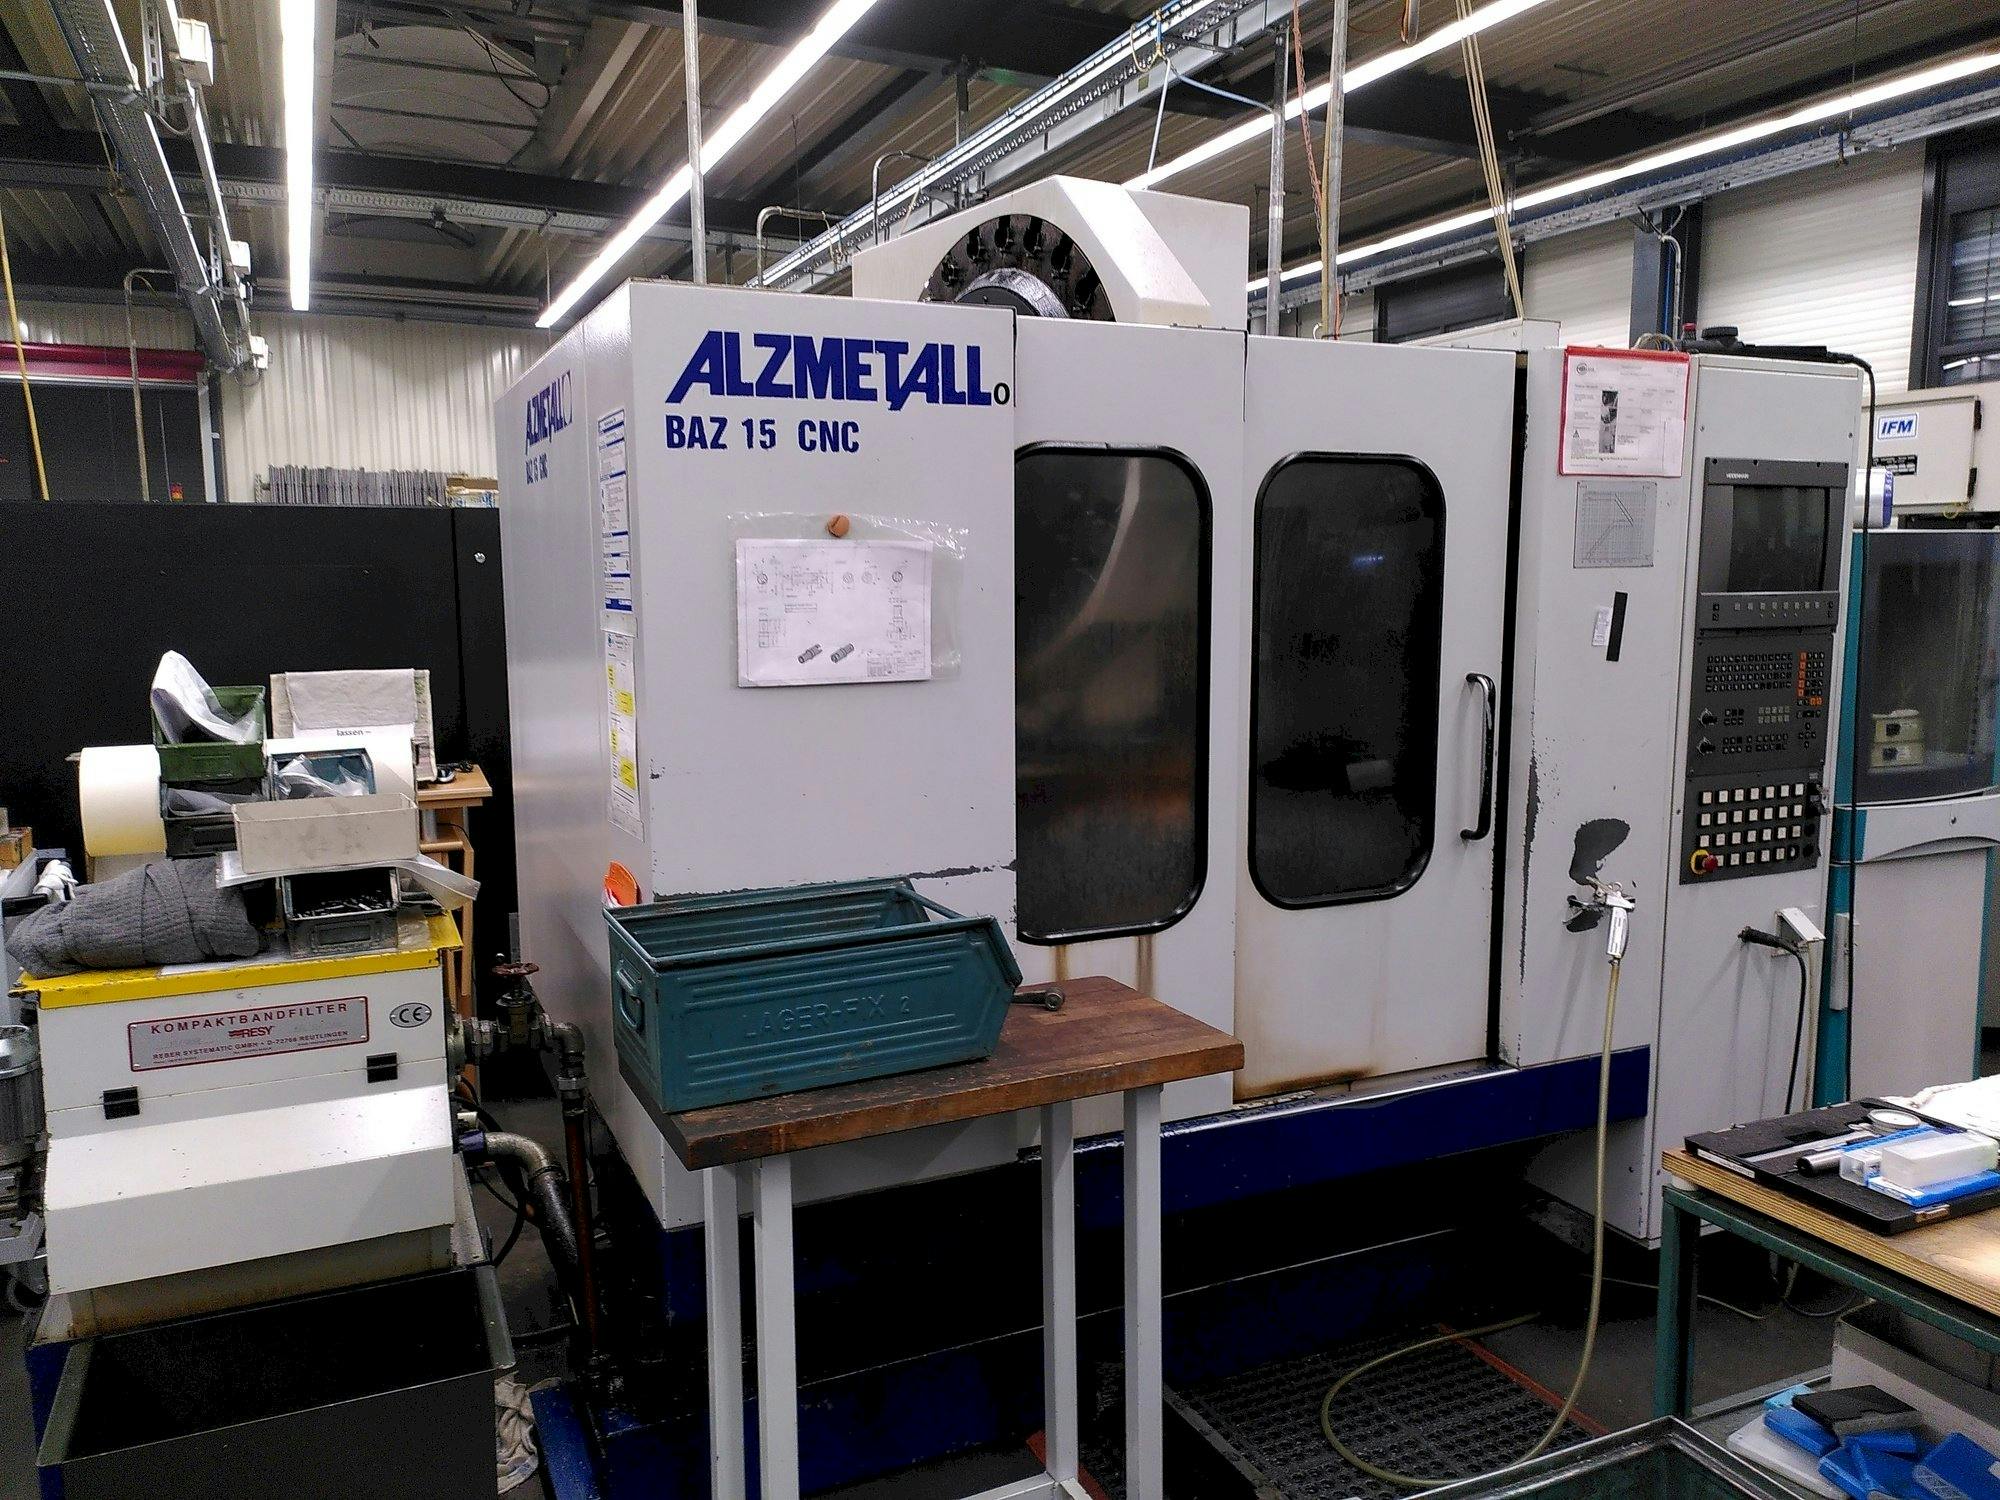 Vooraanzicht  van Alzmetall BAZ 15 CNC  machine